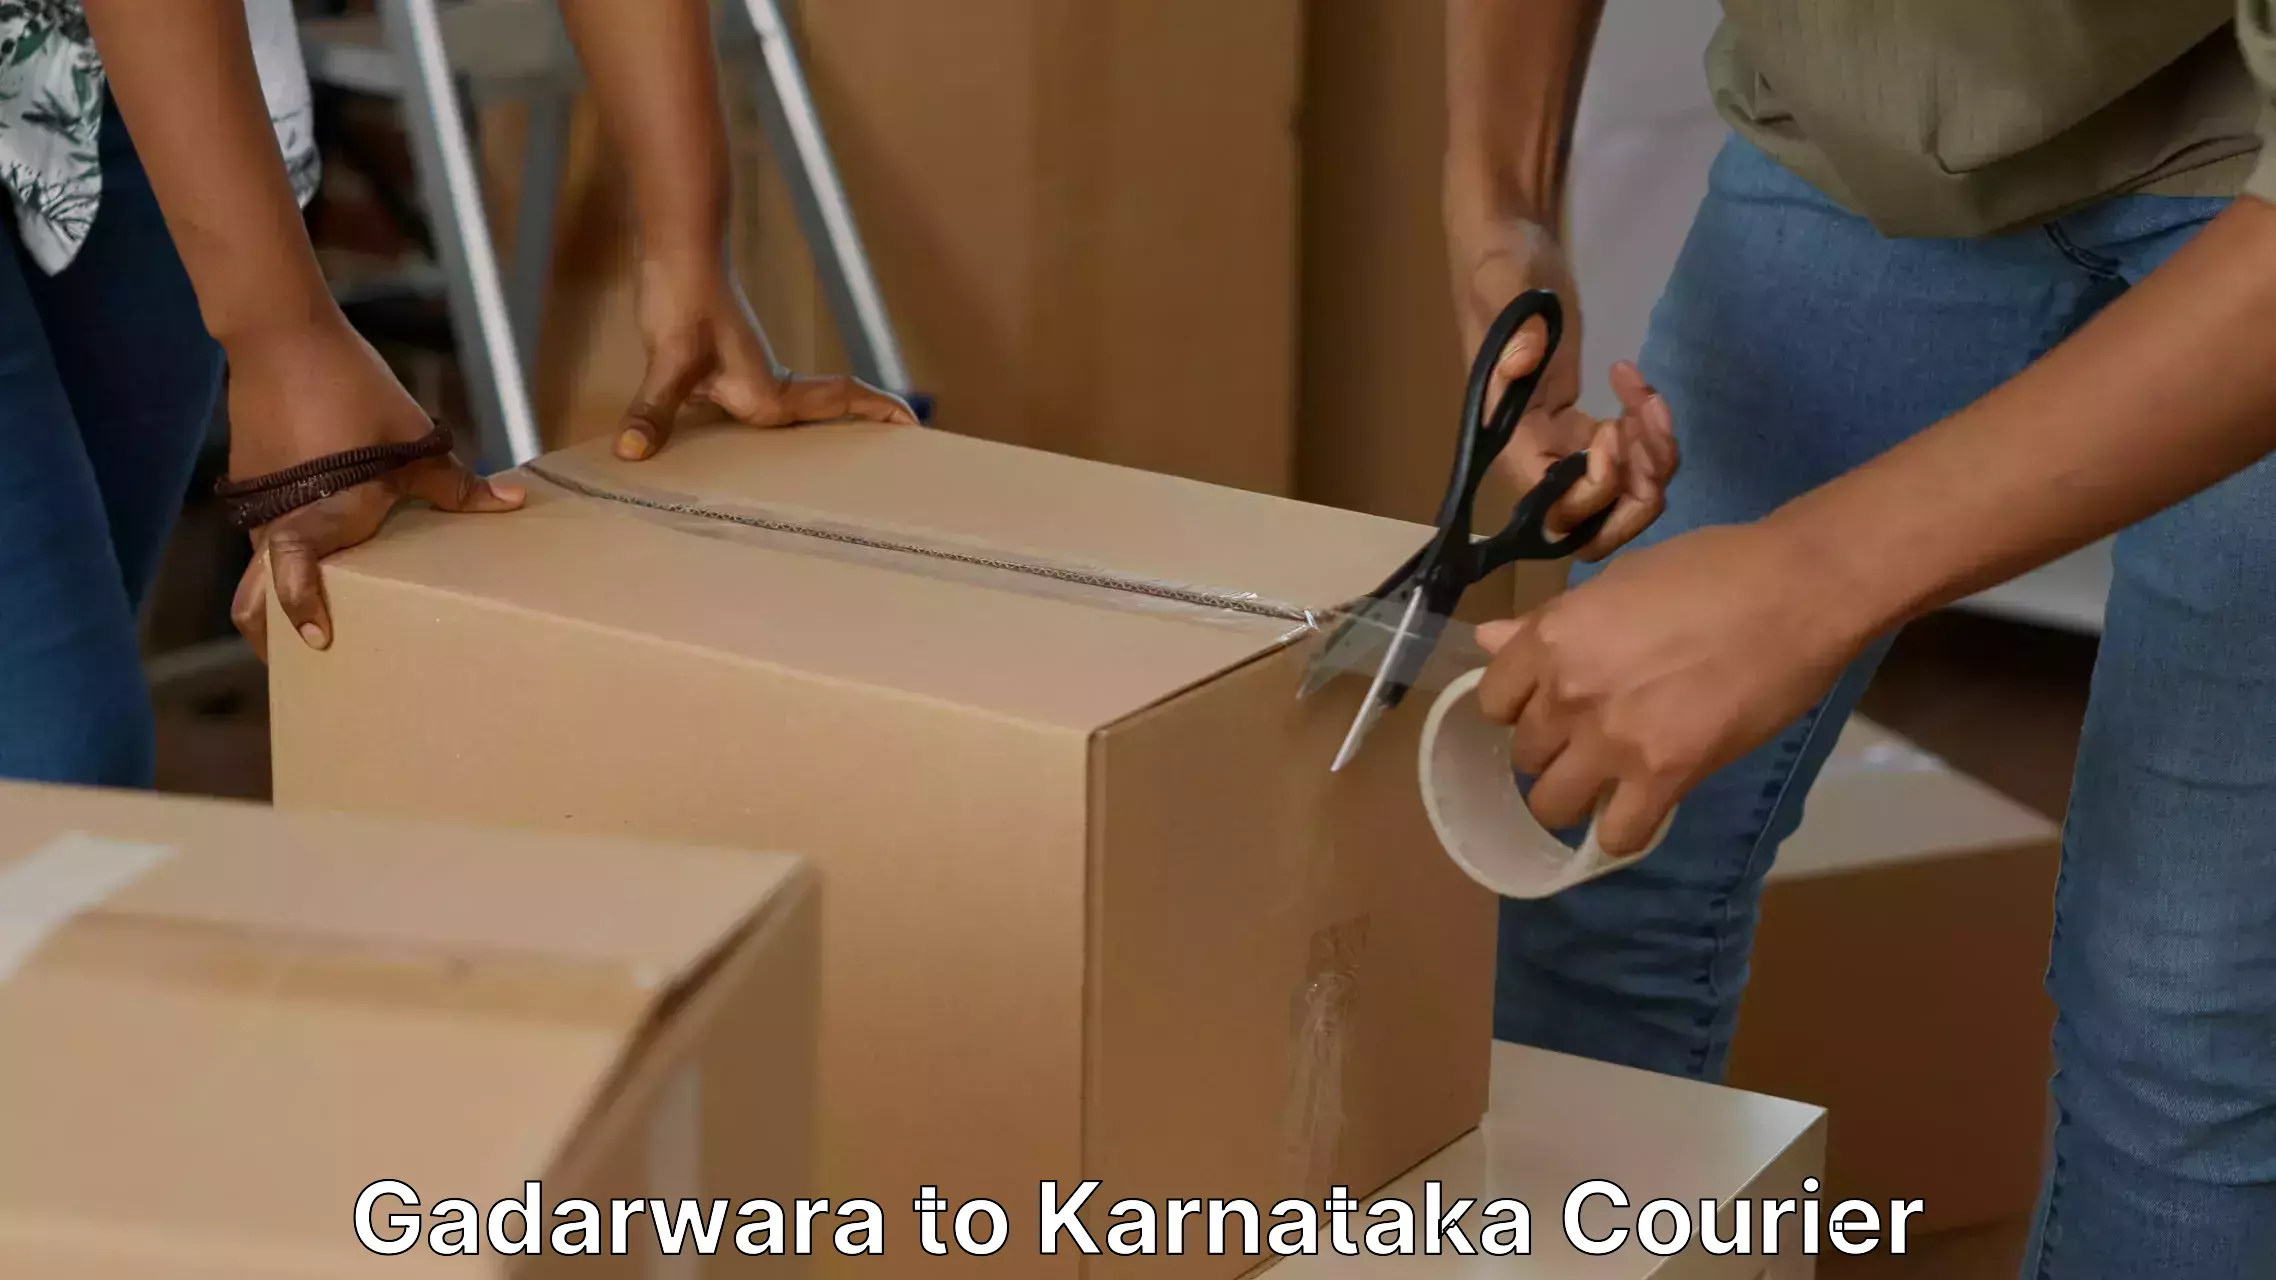 Furniture shipping services in Gadarwara to Davangere